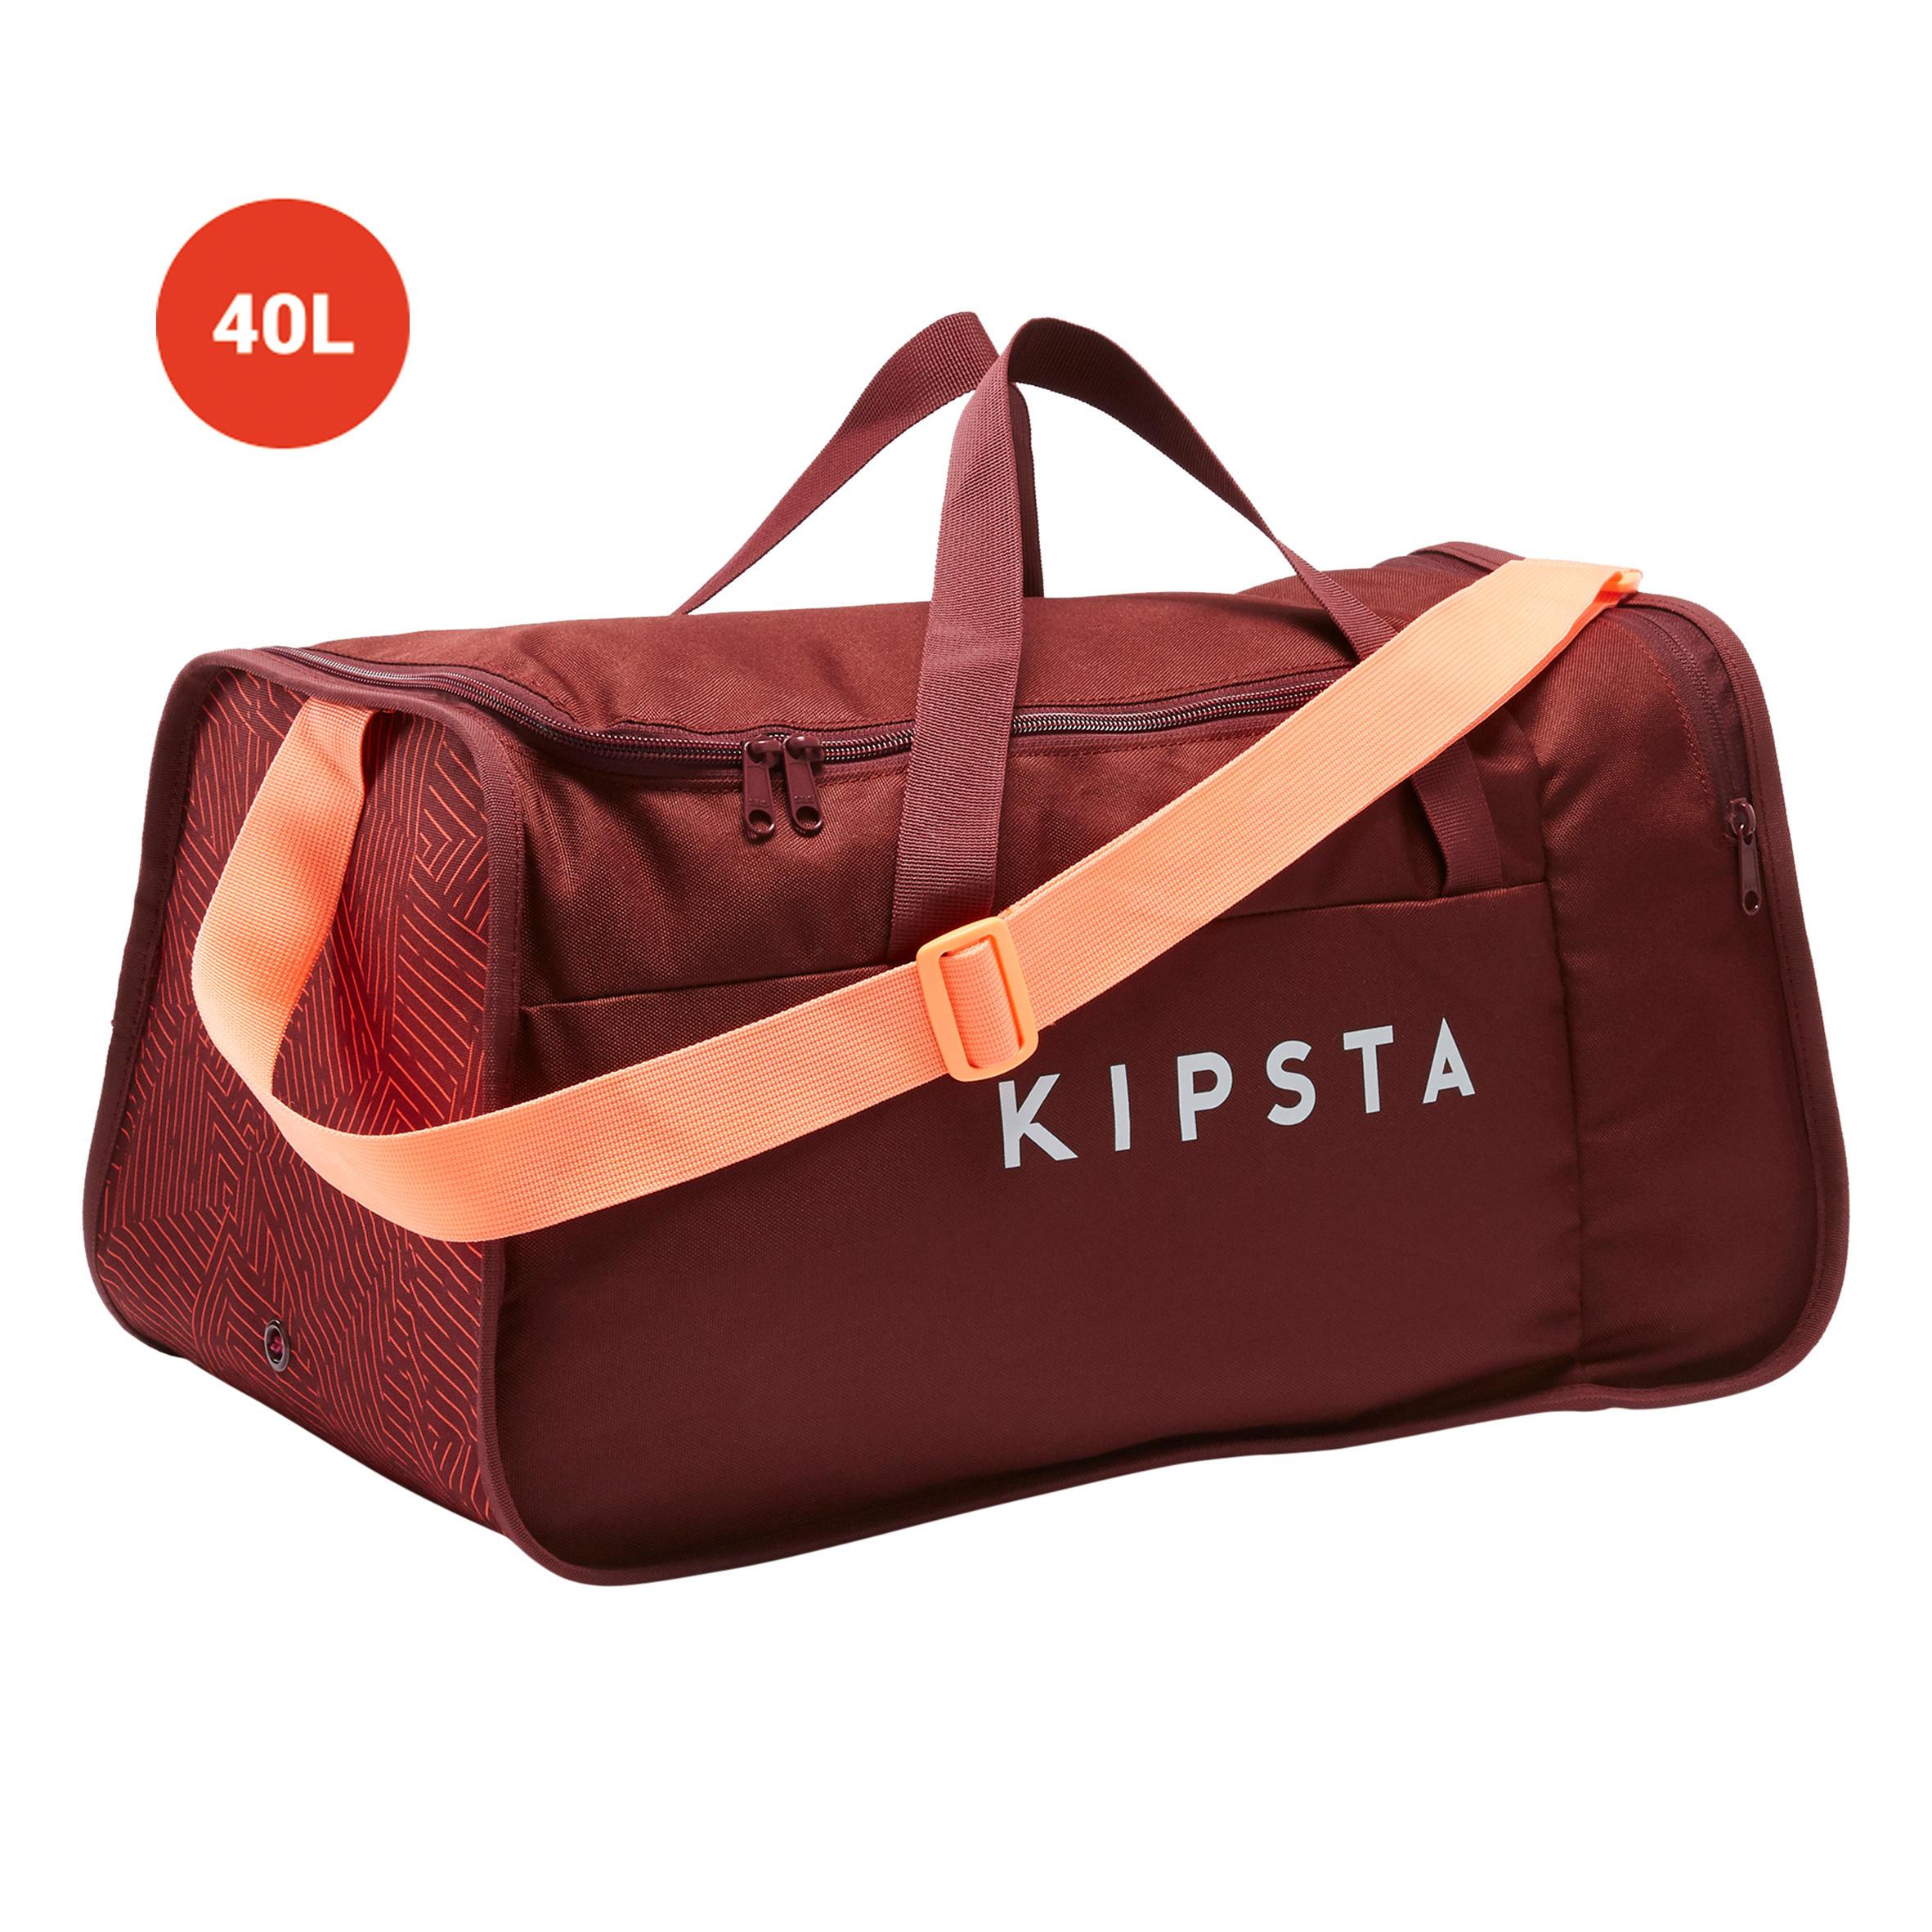 [ด่วน!! โปรโมชั่นมีจำนวนจำกัด] กระเป๋ากีฬารุ่น KIPOCKET ความจุ 40 ลิตร (สีแดง/ส้ม CORAL) สำหรับ ฟุตบอล